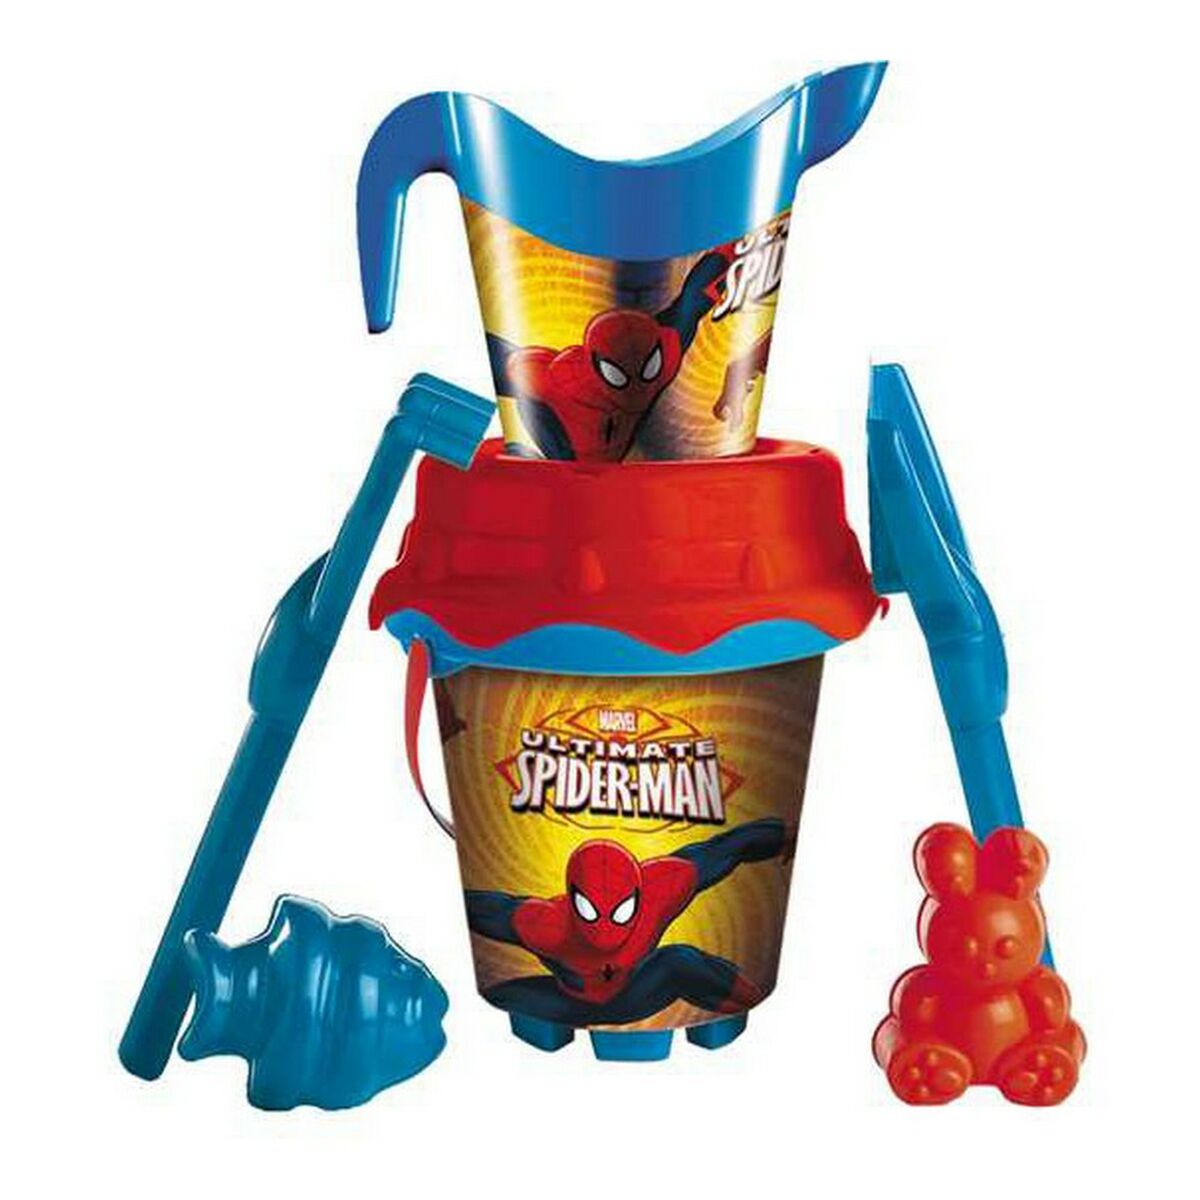 Osta tuote Rantaämpäri Spider-Man 18 cm verkkokaupastamme Korhone: Urheilu & Vapaa-aika 20% alennuksella koodilla VIIKONLOPPU